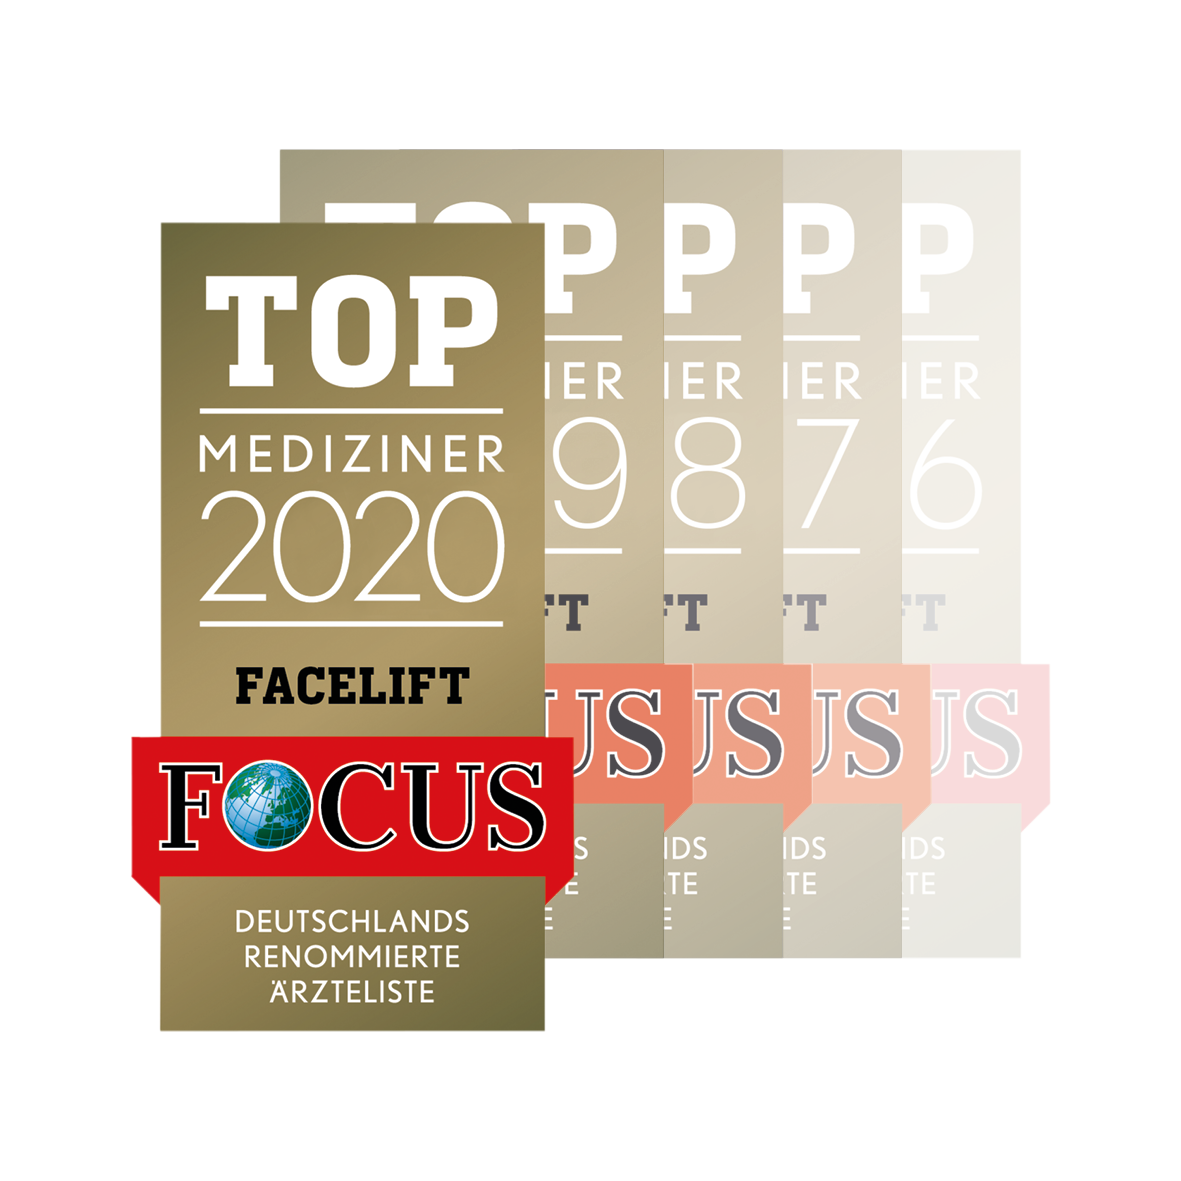 Top Mediziner 2020 - Facelift - FOCUS